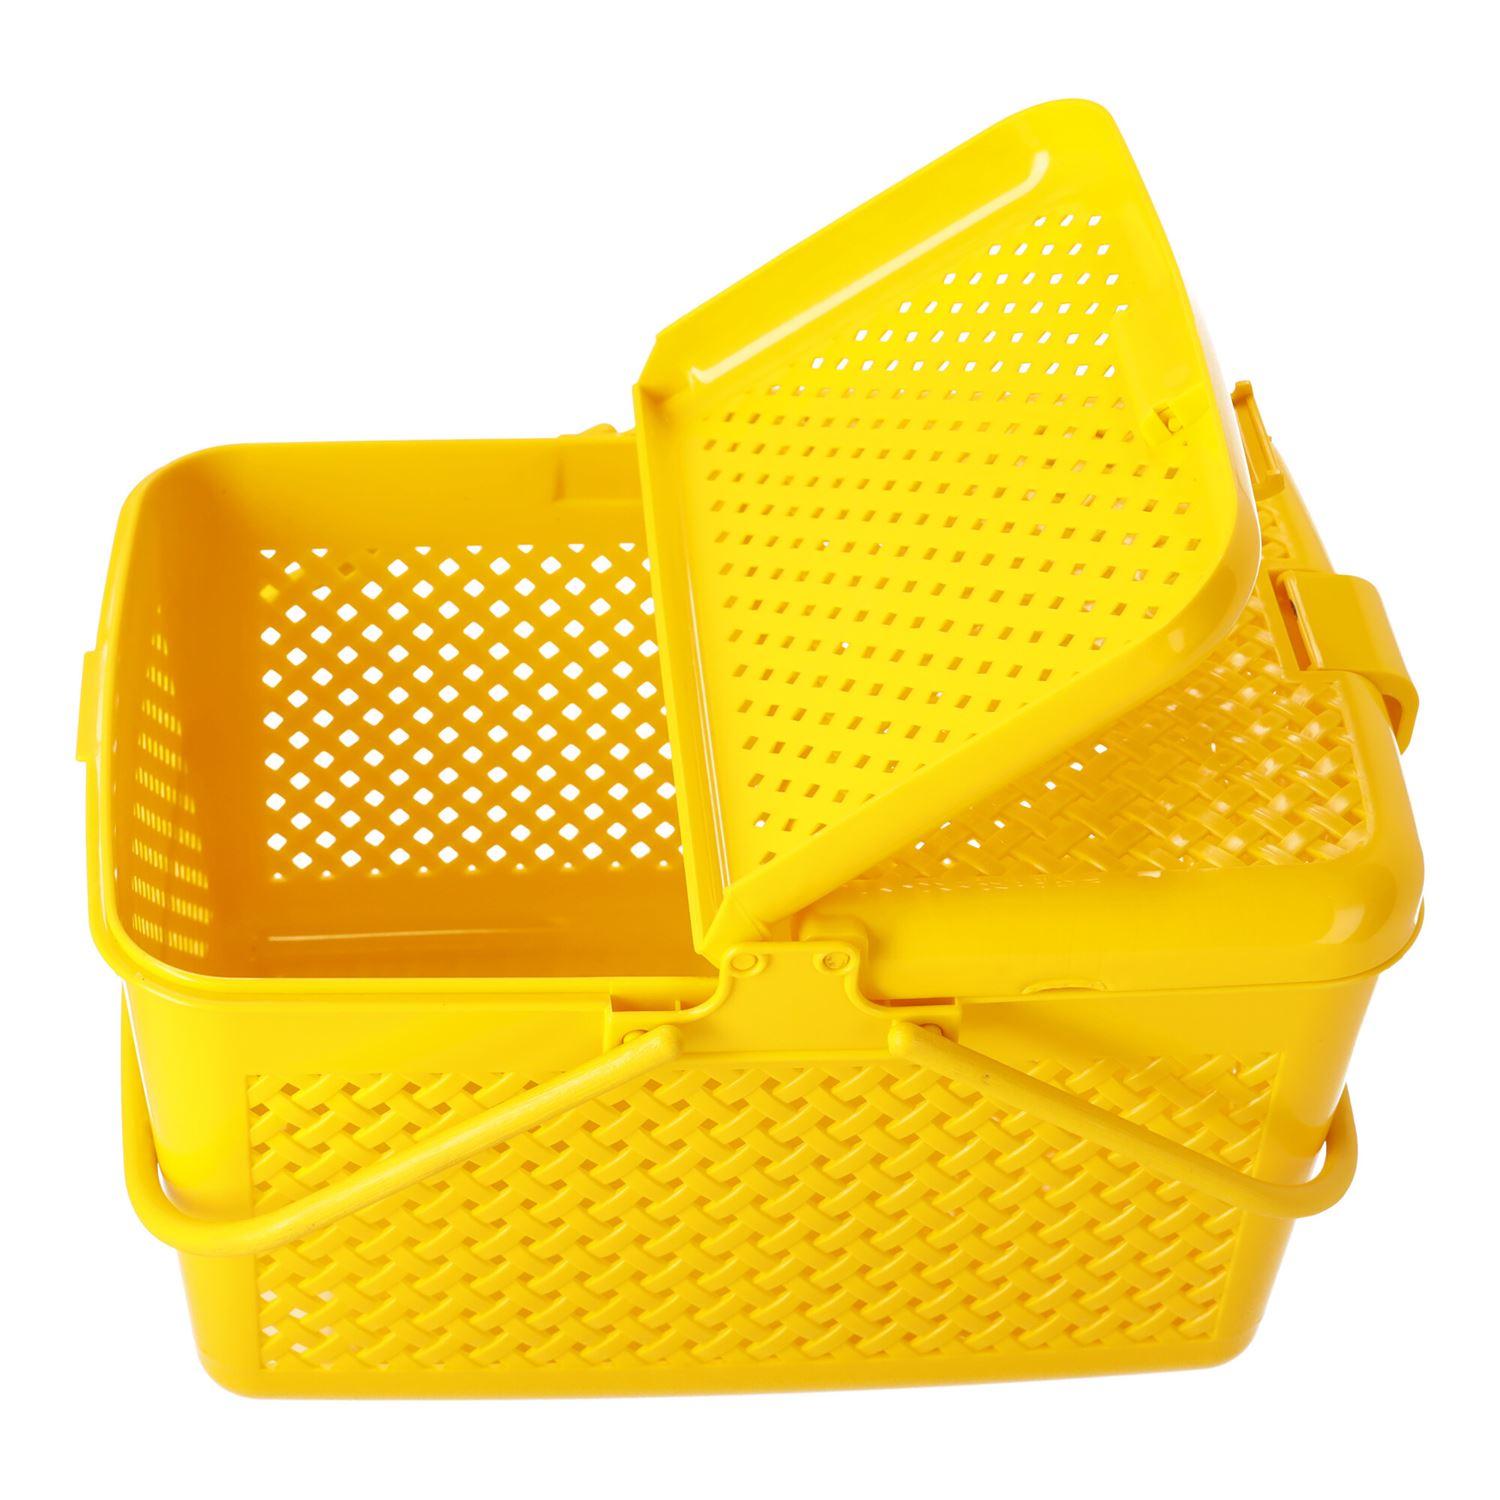 Kosz piknikowy zamykany - prostokątny żółty, POLSKI PRODUKT